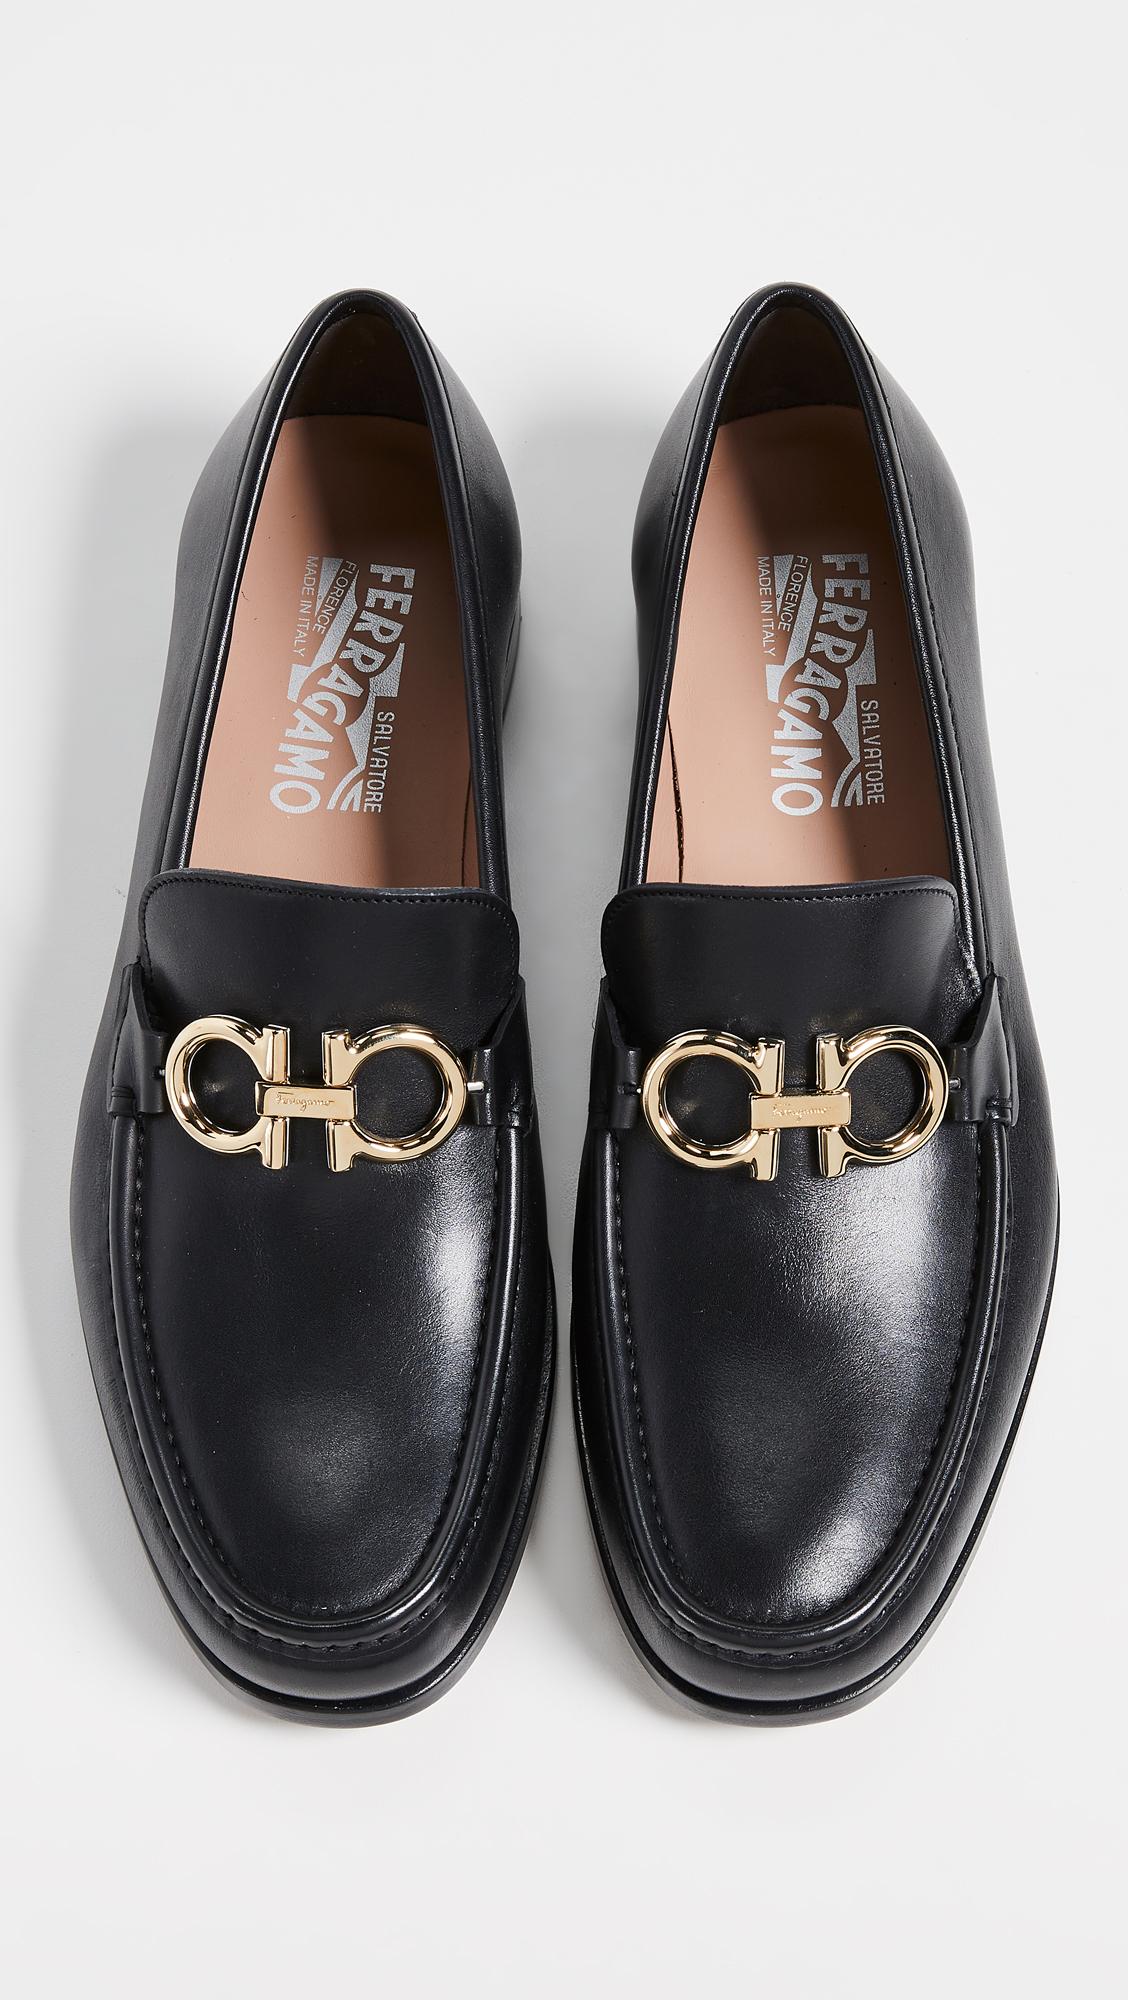 Ferragamo Leather Rolo Reversible Bit Loafers in Black for Men - Lyst